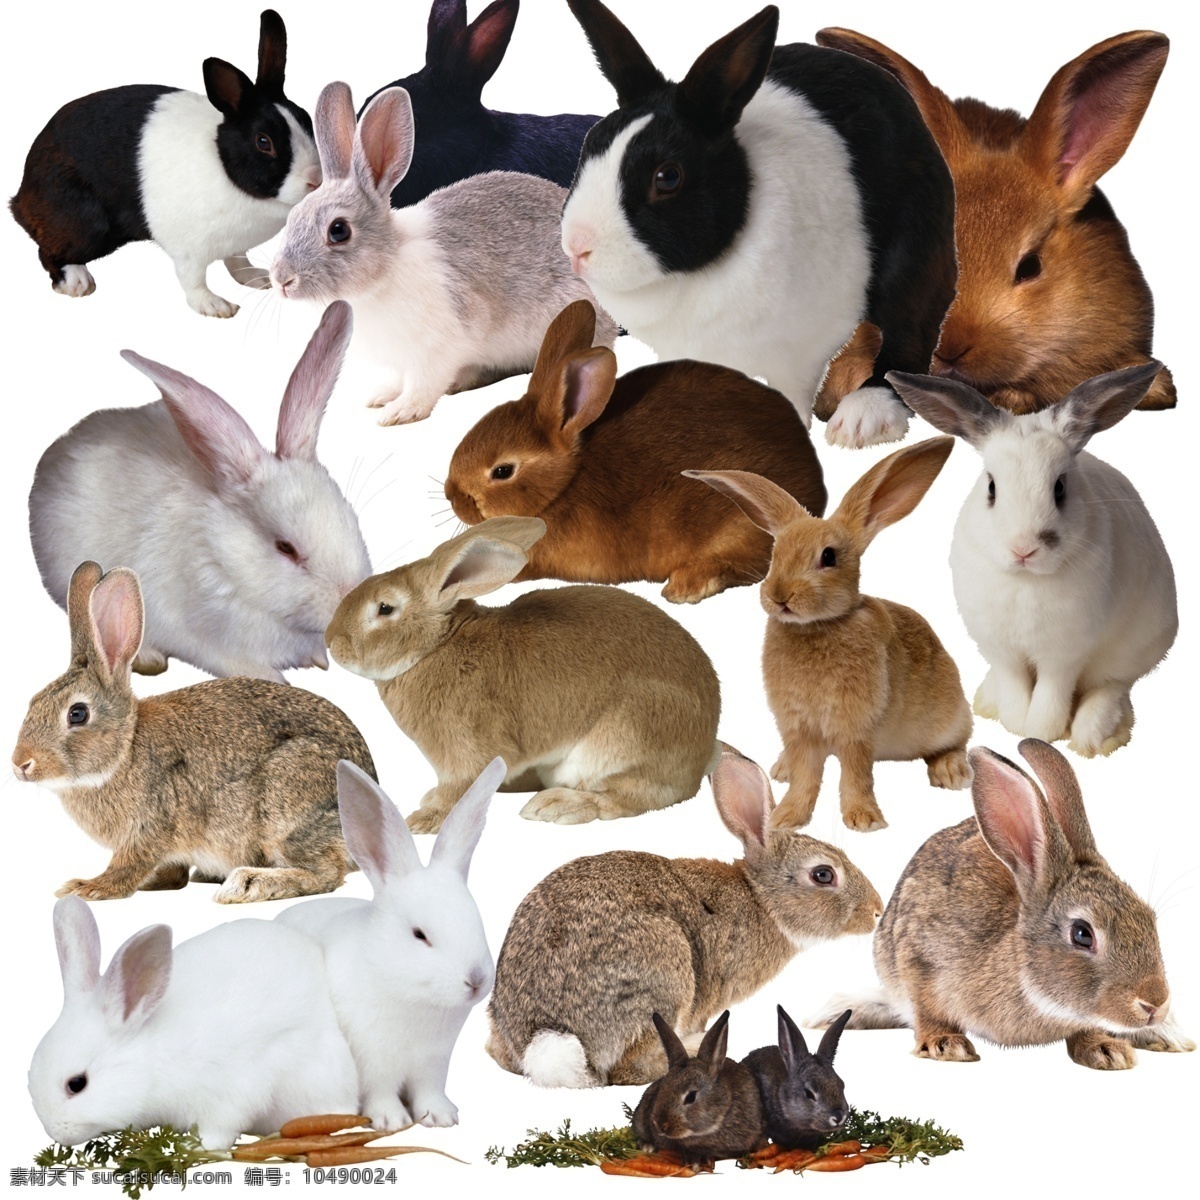 兔子 混合图片 白兔 灰兔子 兔子图 分层